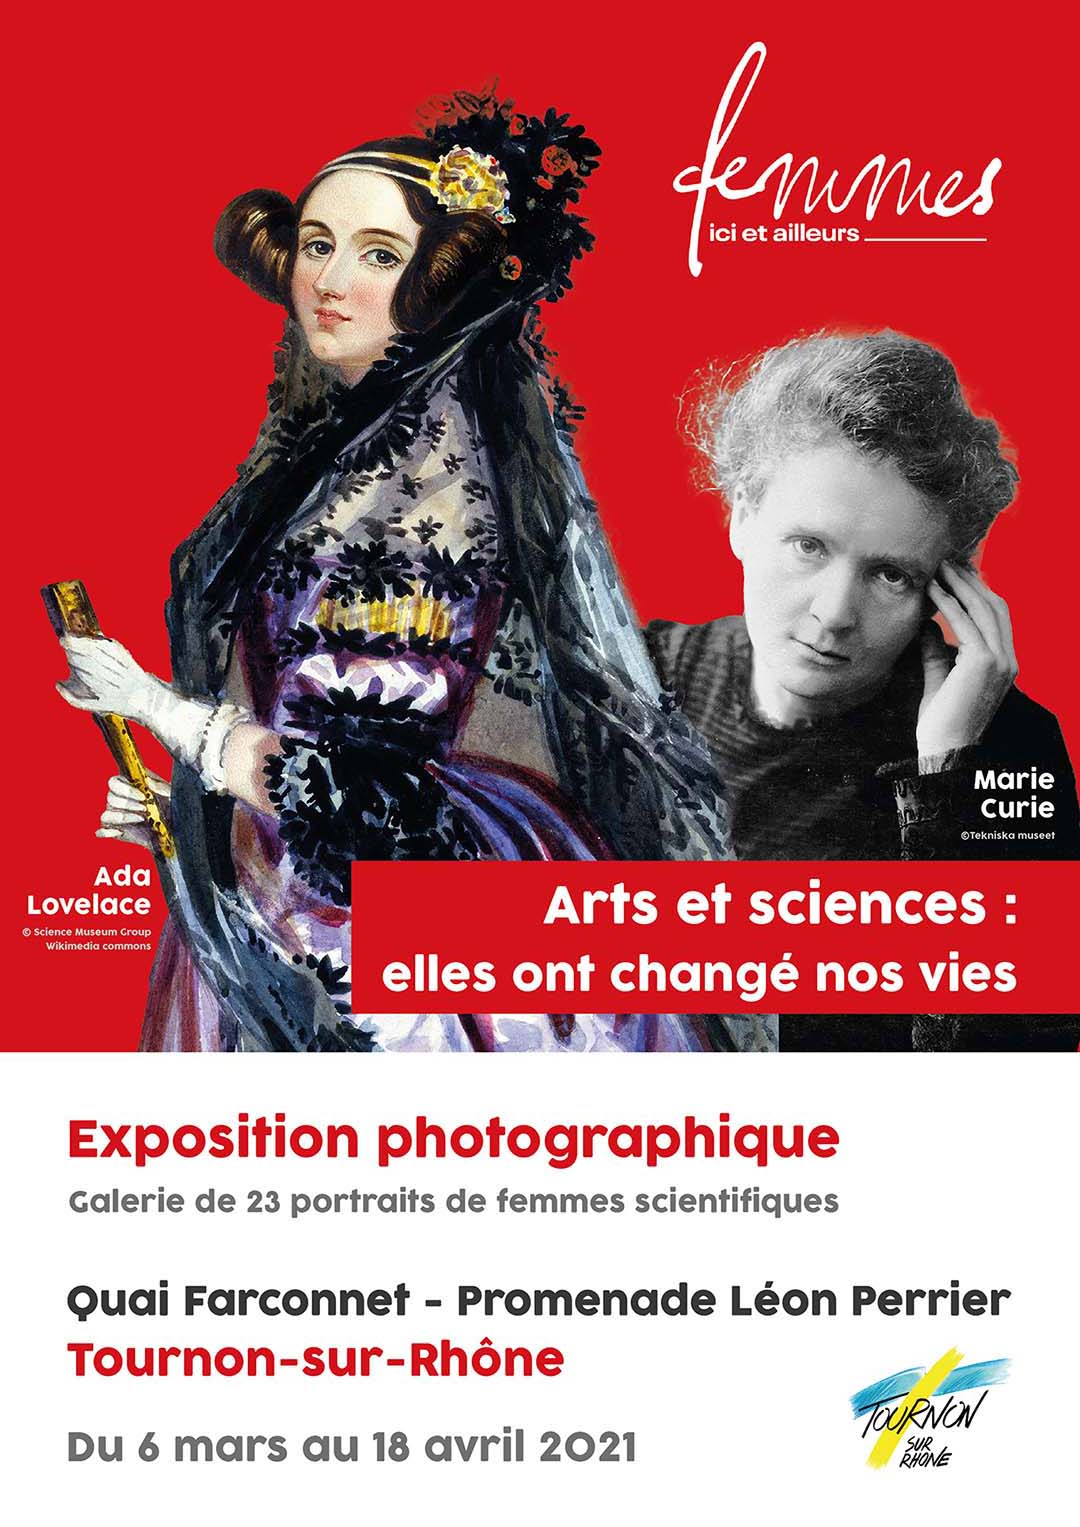 Arts et sciences : elles ont changé nos vies. Exposition photographique. 23 portraits de femmes scientifiques. quai Farconnet - Promenade Léon Perrier - Tournon-sur-Rhône. Du 6 mars au 18 avri